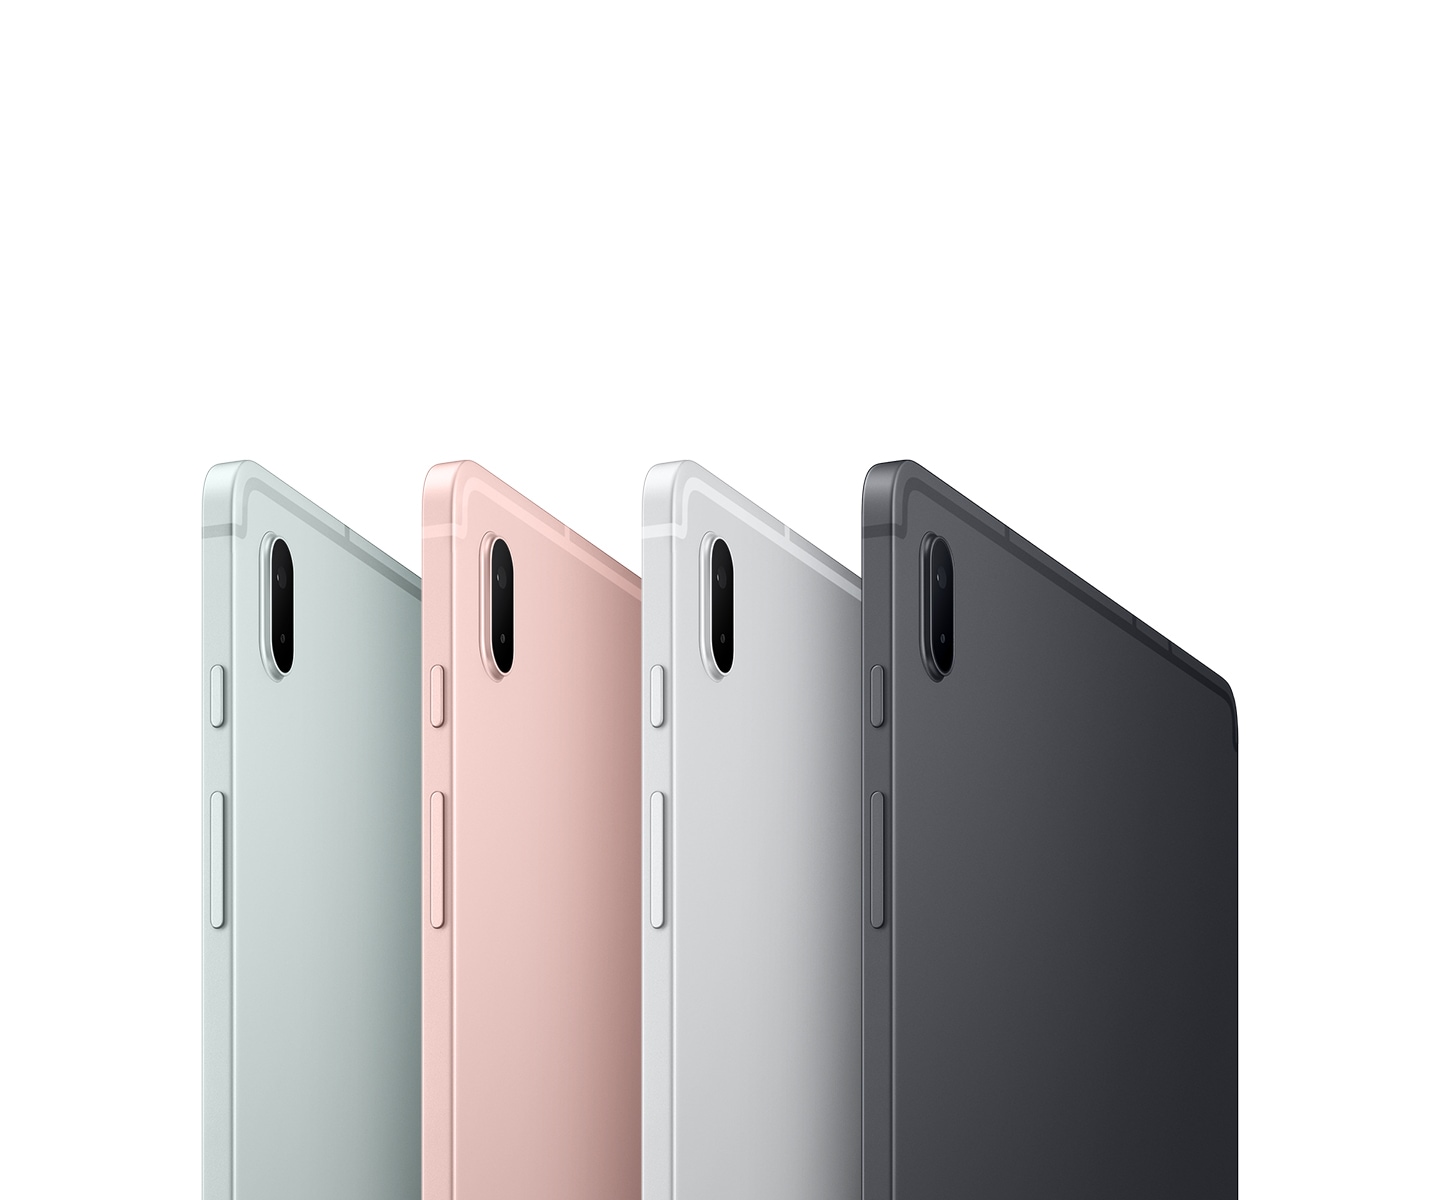 Четири таблета Galaxy Tab S7 FE 5G са показани в гръб и под ъгъл, за да се видят по-добре цветовете им: Mистично черно, Мистично сребърно, Мистично розово и Мистично зелено.